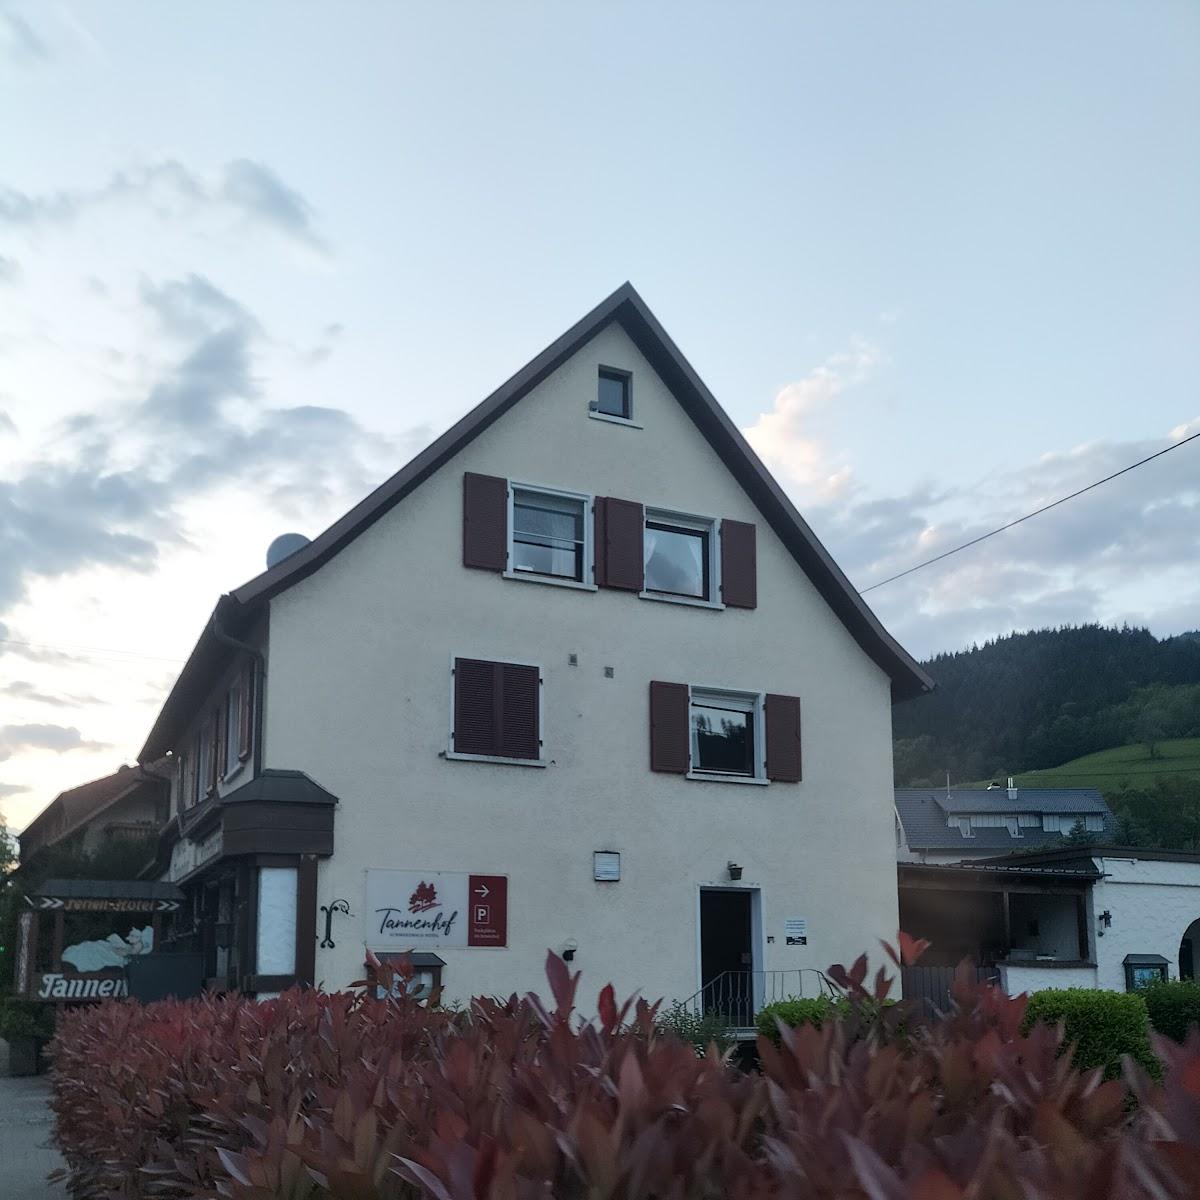 Restaurant "Gasthaus Hotel Tannenhof" in Simonswald